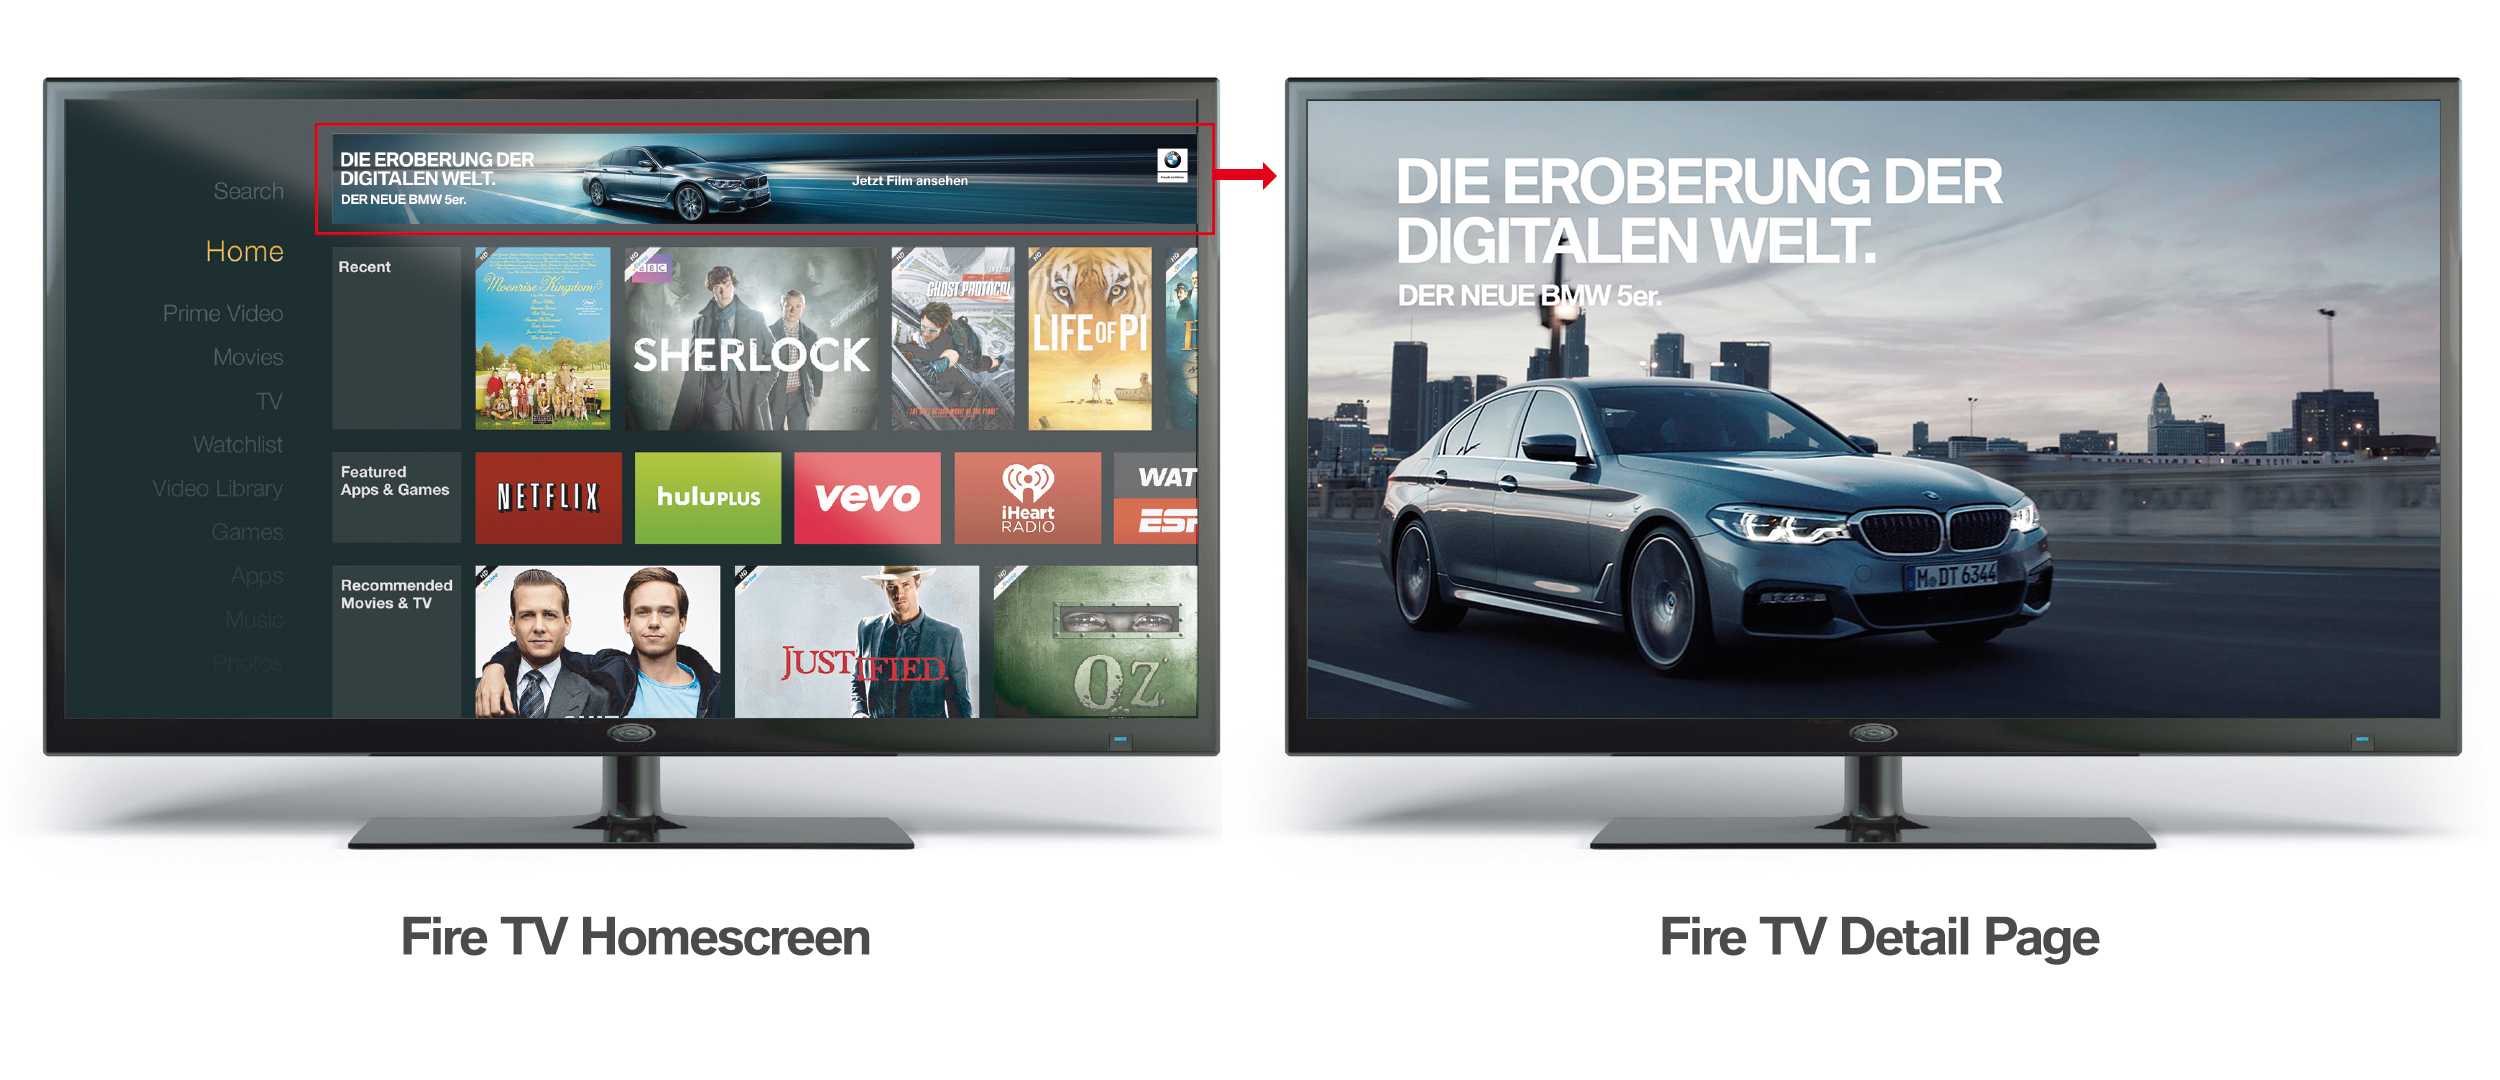 DIE EROBERUNG DER DIGITALEN WELT. Kampagne für die neue BMW 5er Limousine in Deutschland. Digitalanzeige in Amazon Fire TV.(01/2017)